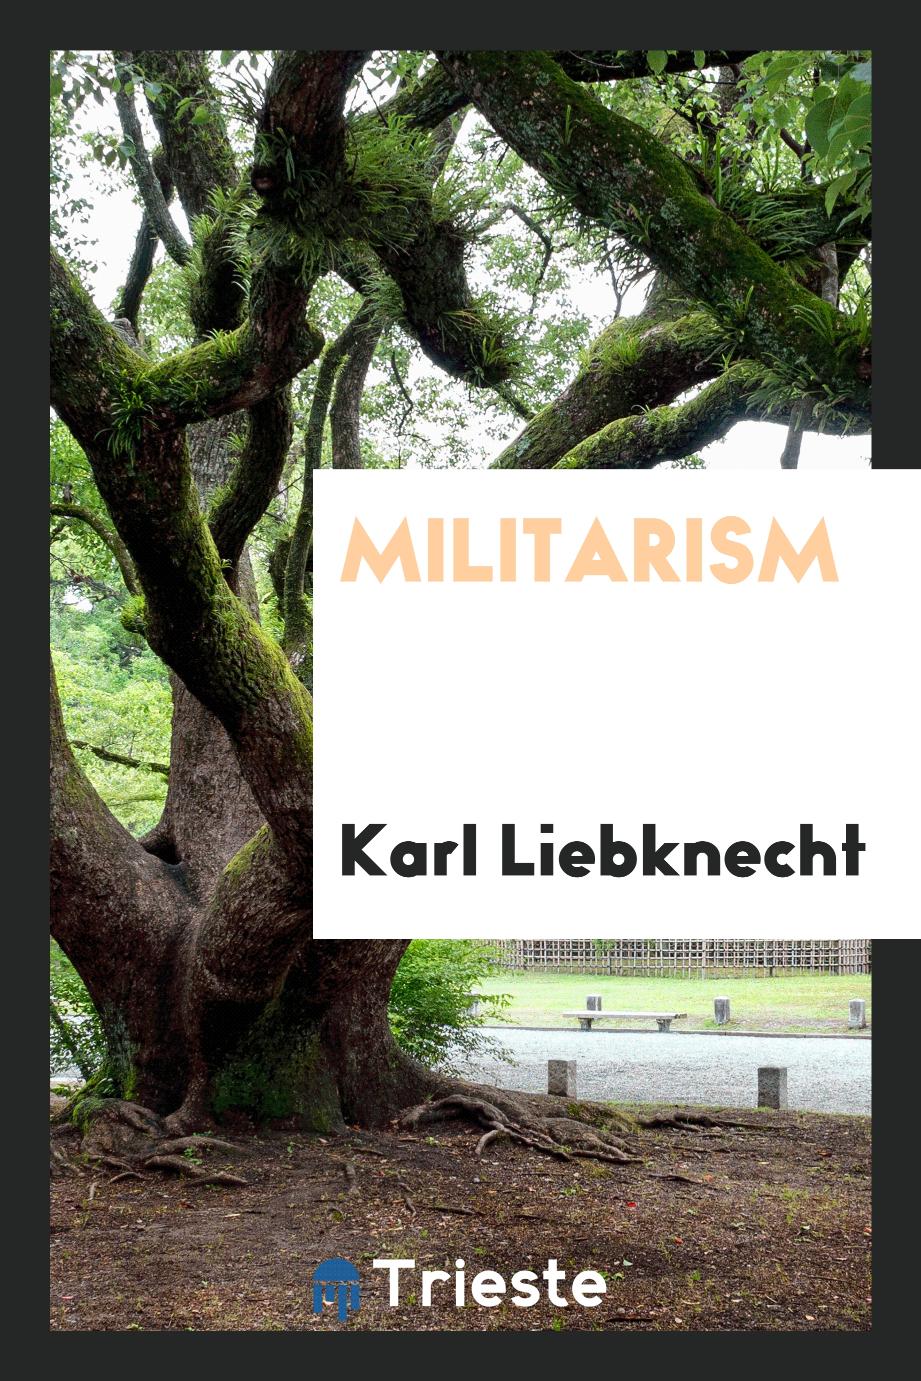 Karl Liebknecht - Militarism